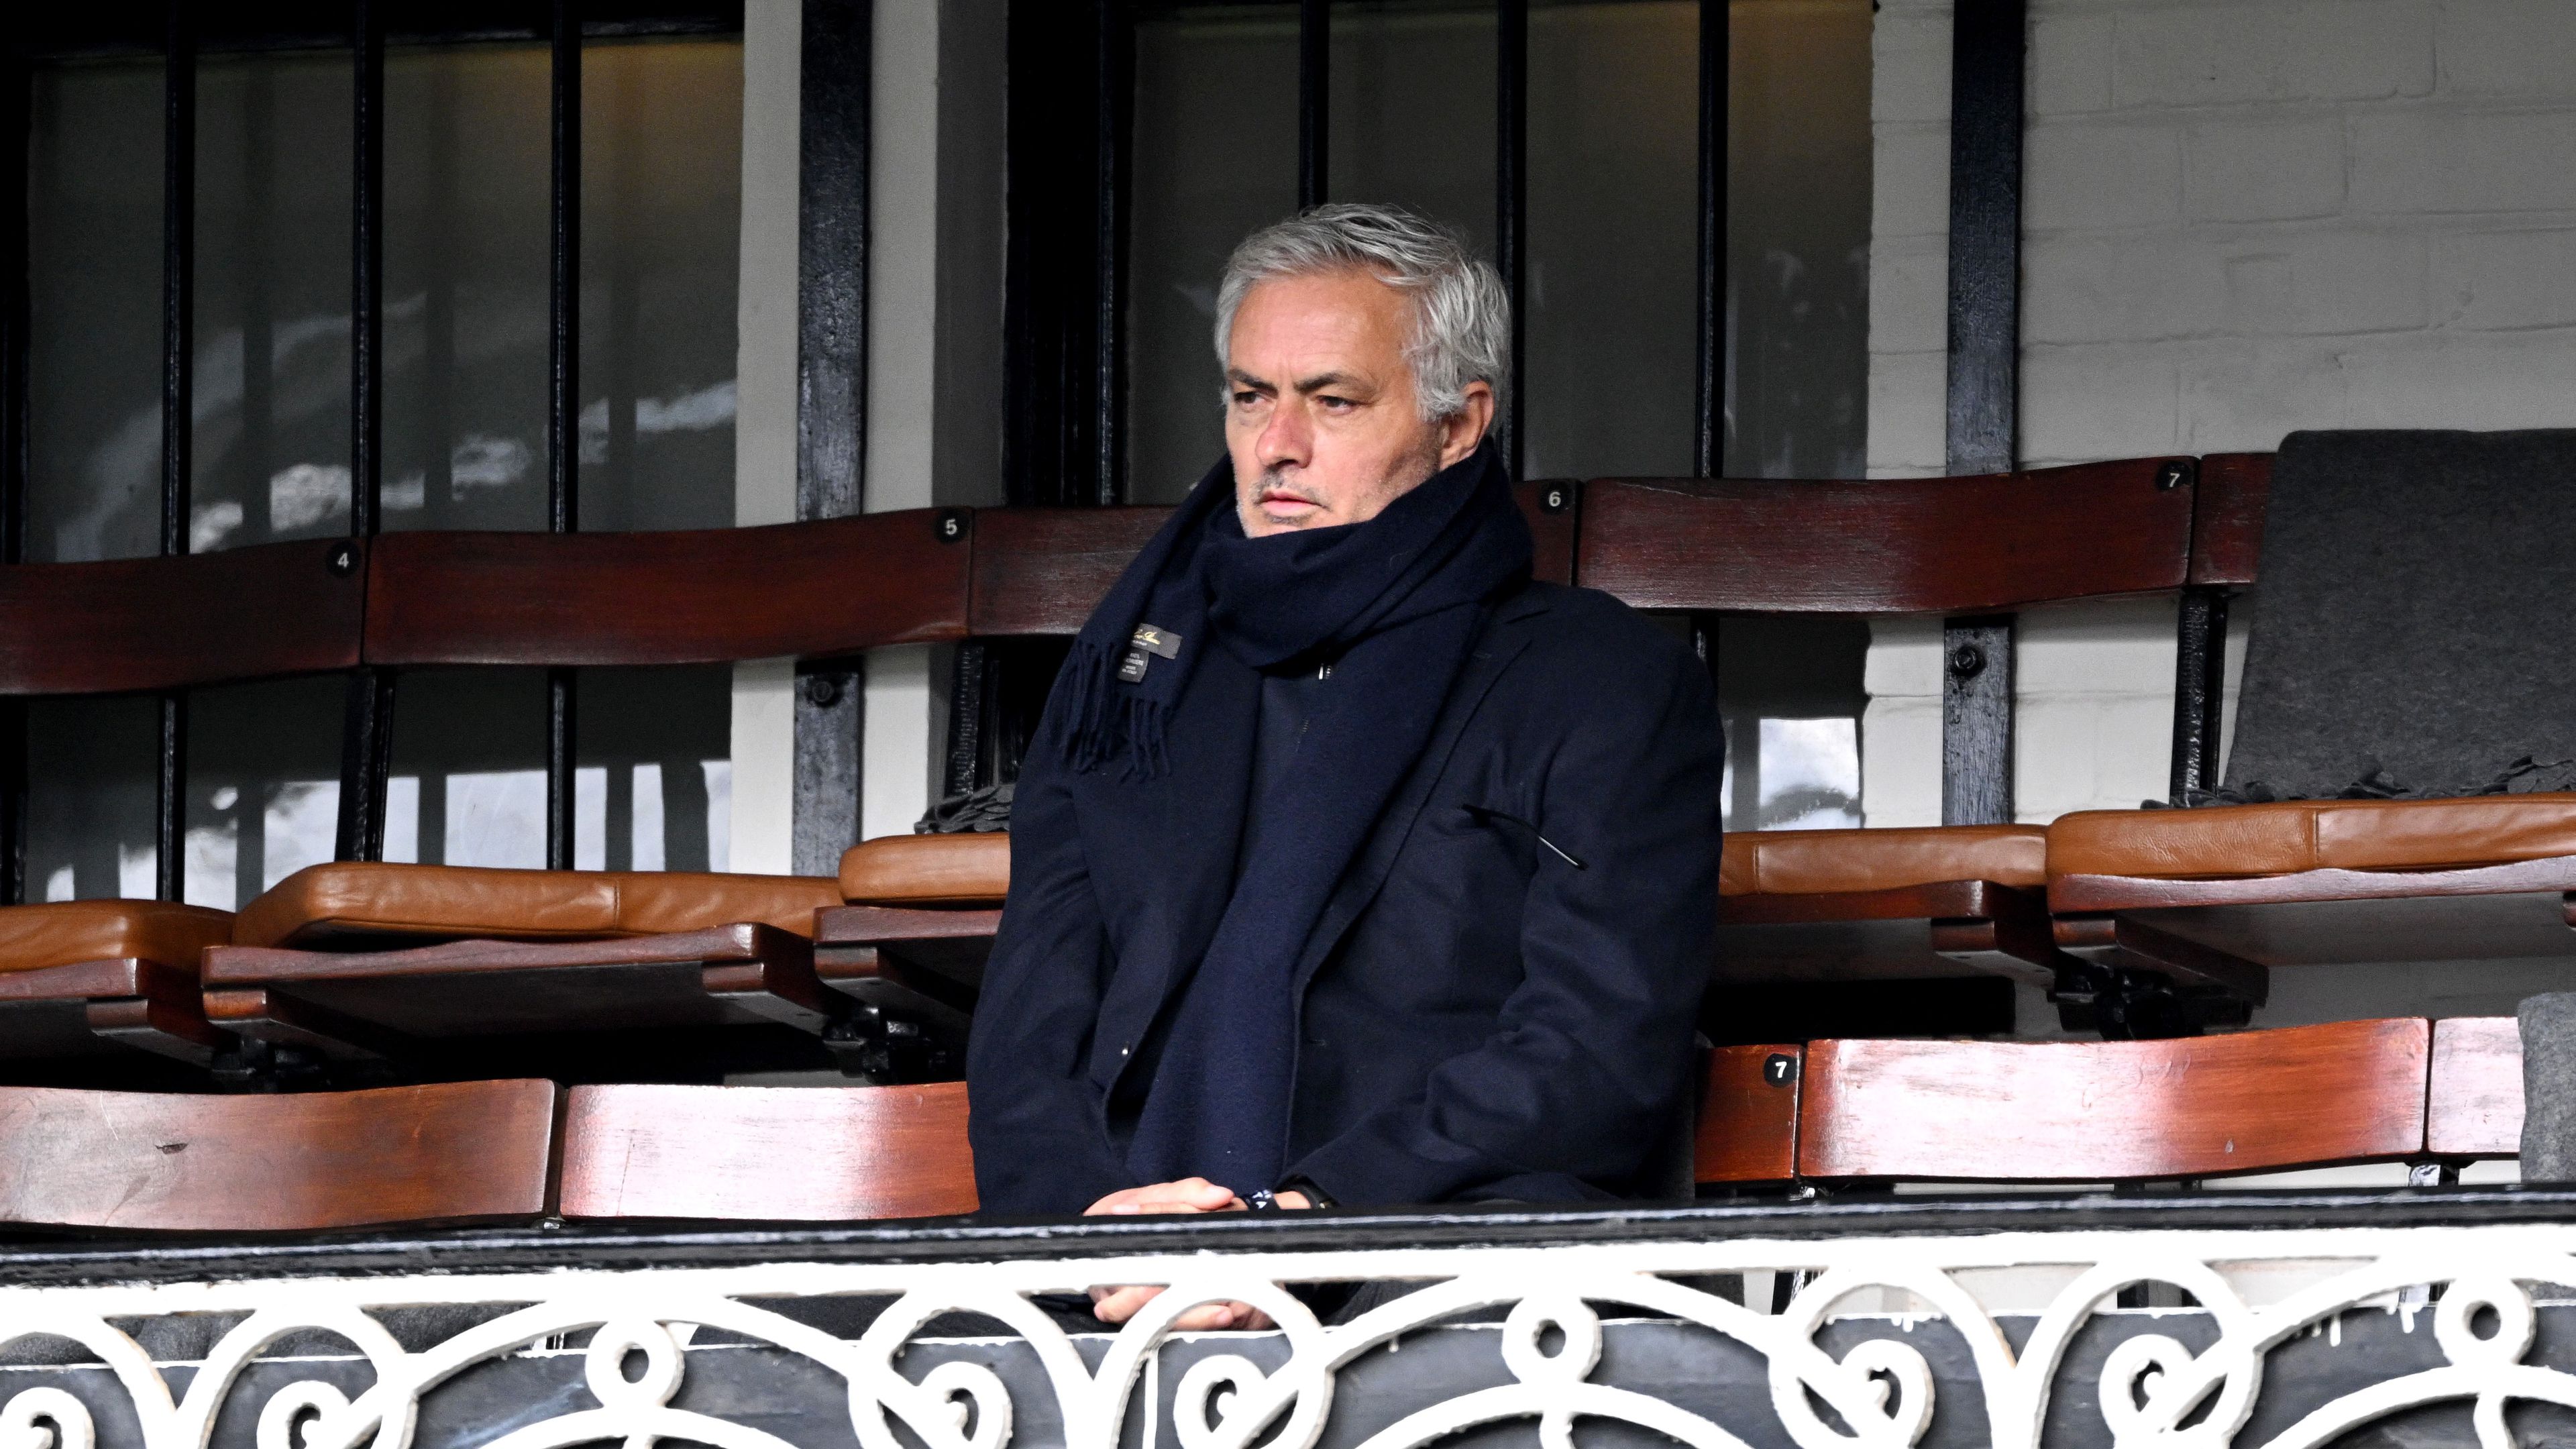 José Mourinho is feltűnt a Liverpool meccsén – képpel